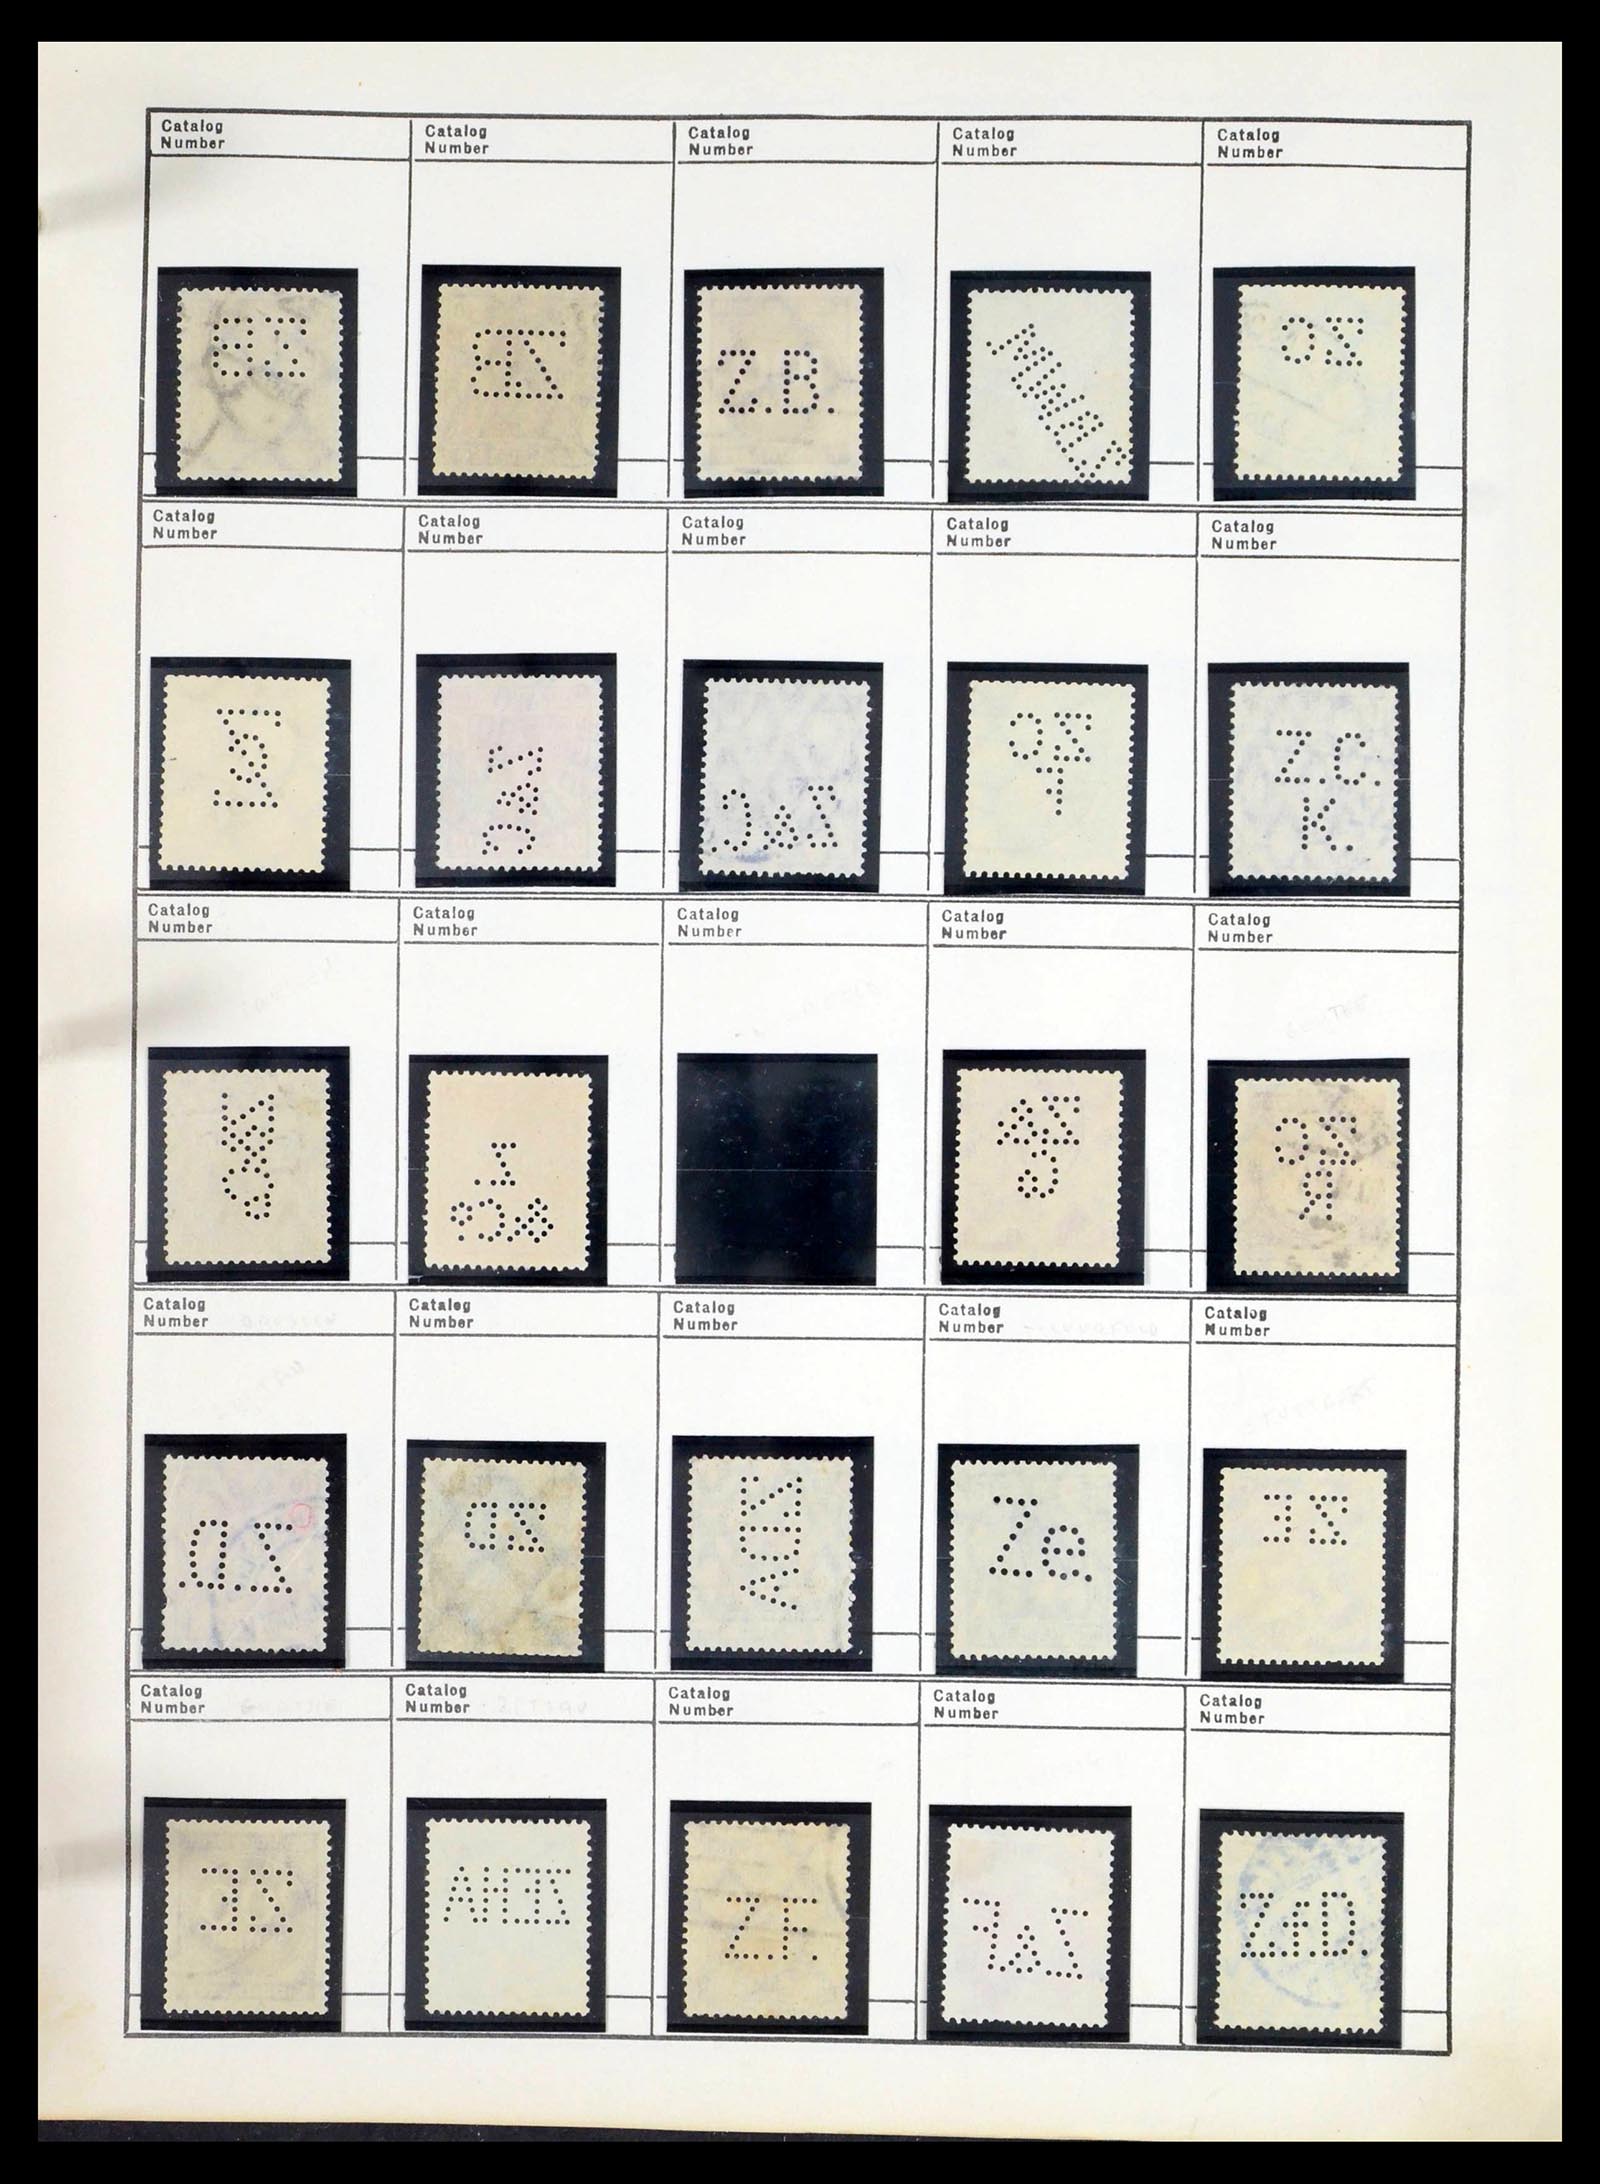 39480 0589 - Stamp collection 39480 German Reich perfins 1880-1955.